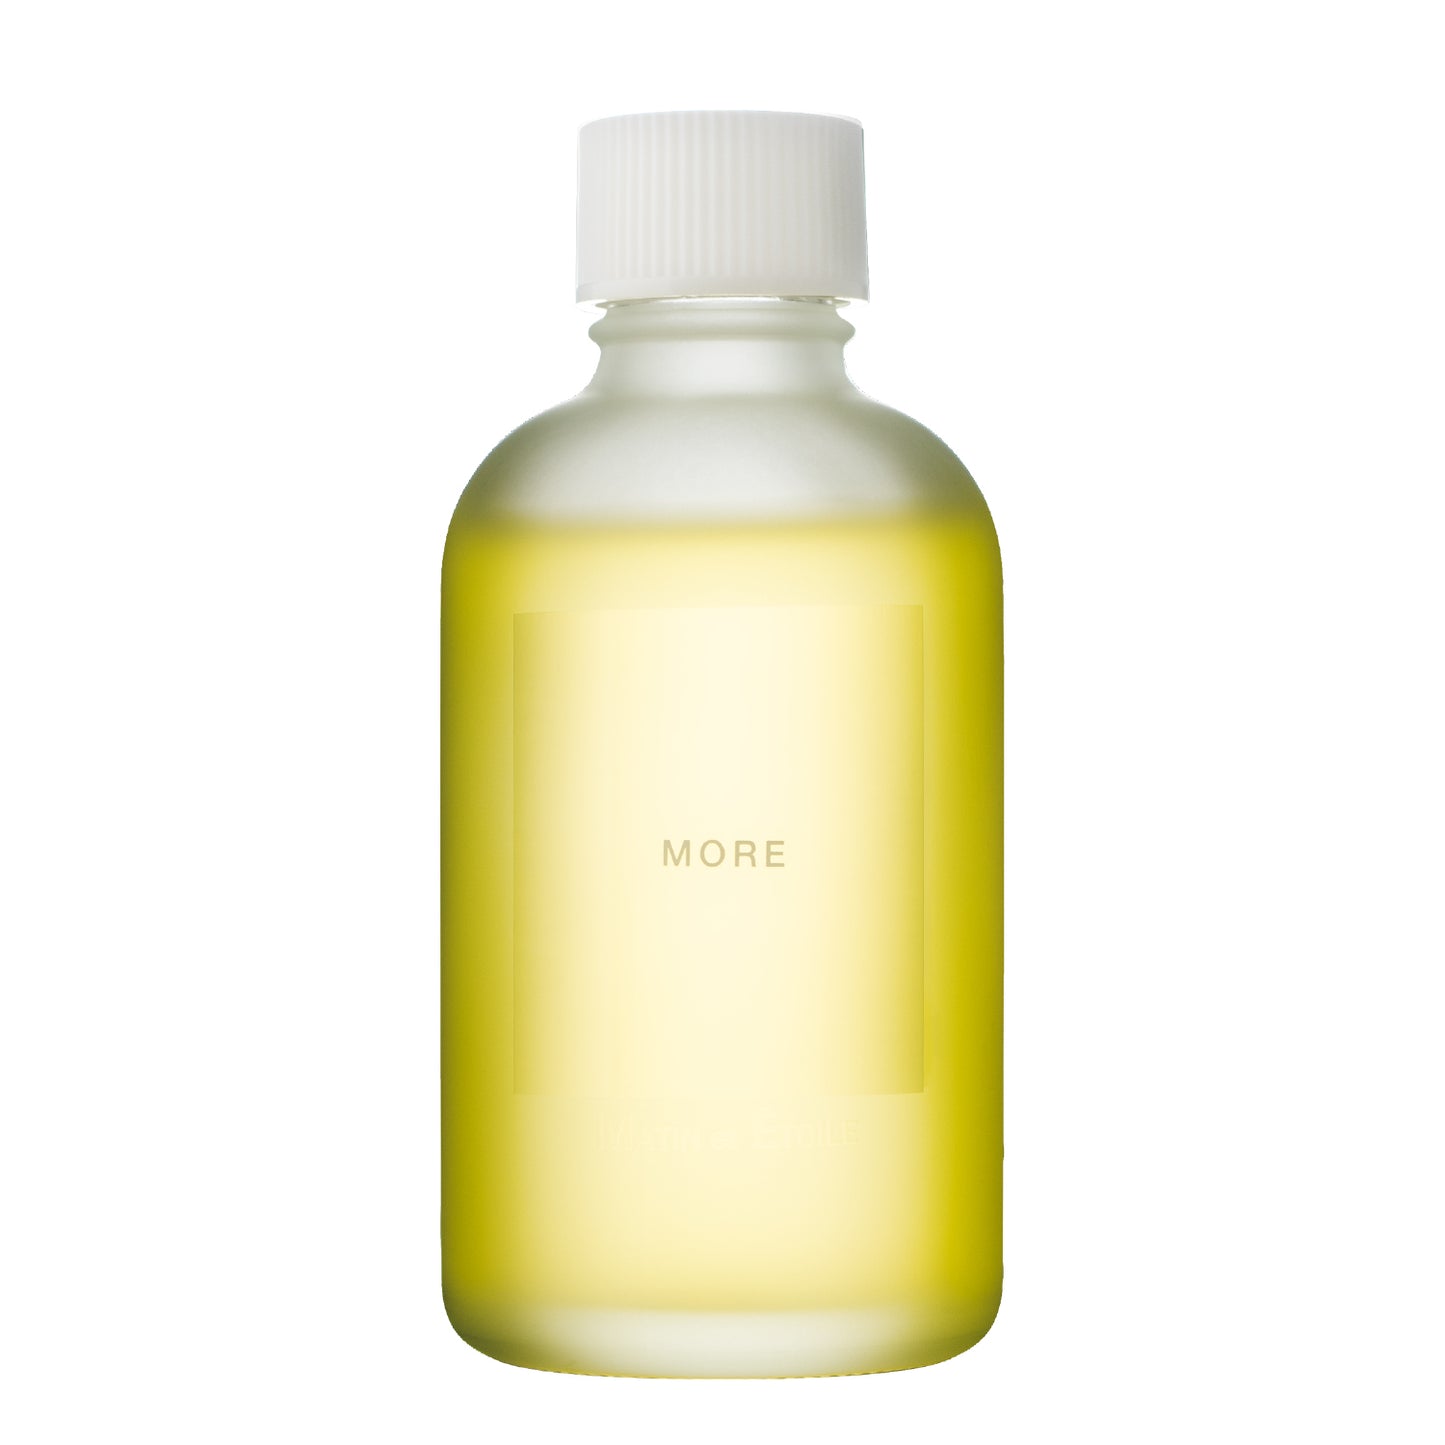 Hair Oil Serum - MORE